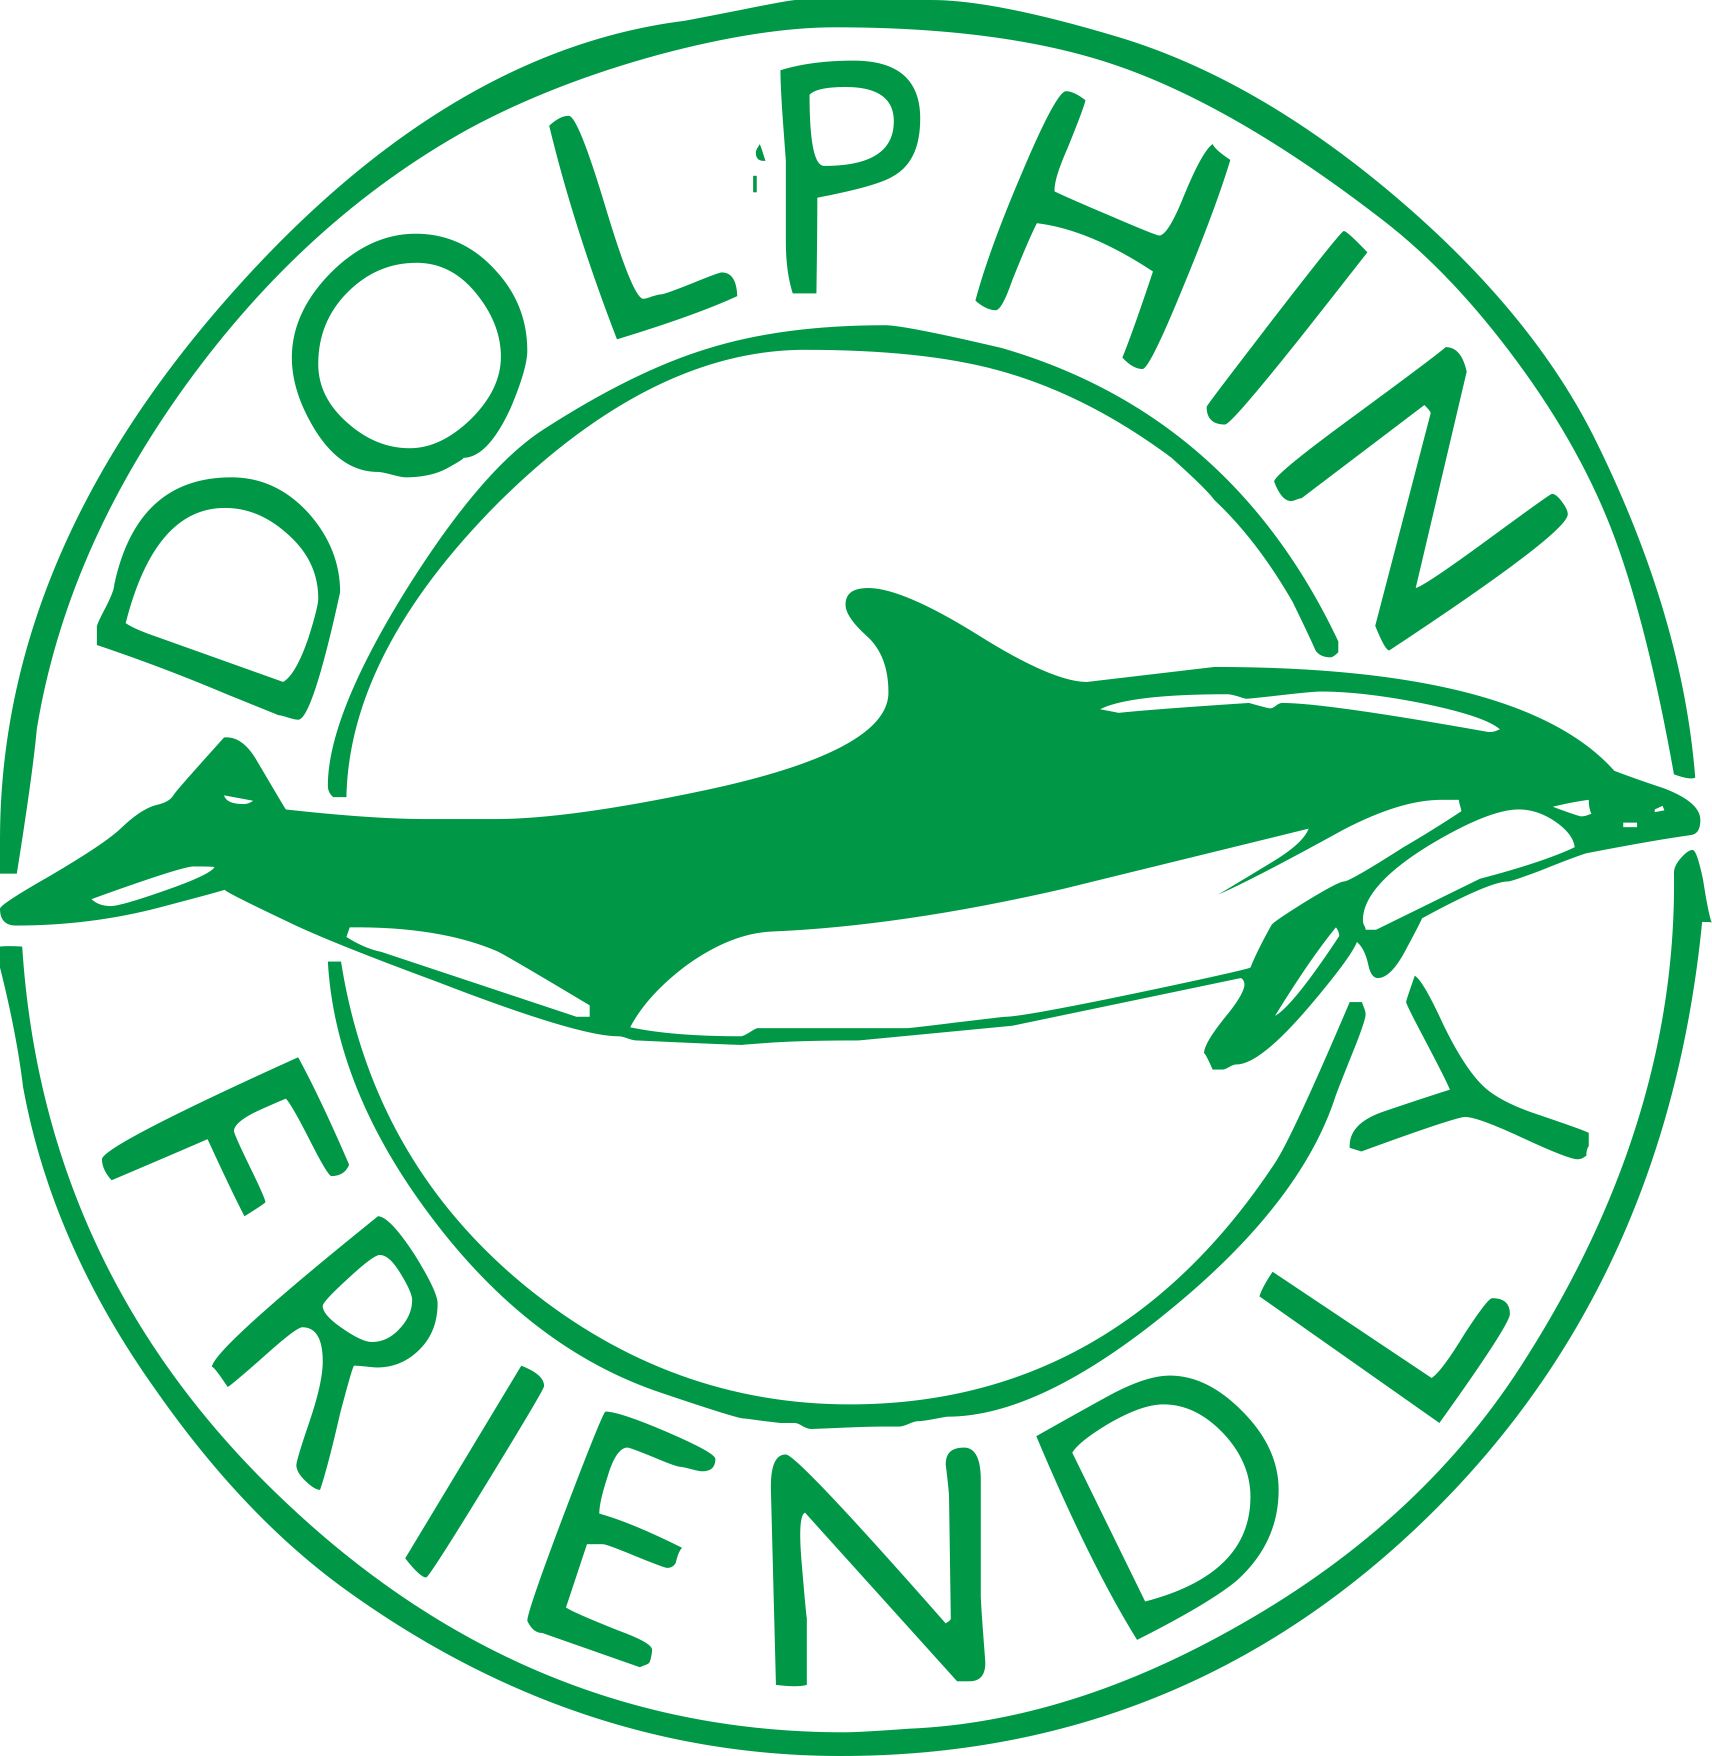 Dolphin api